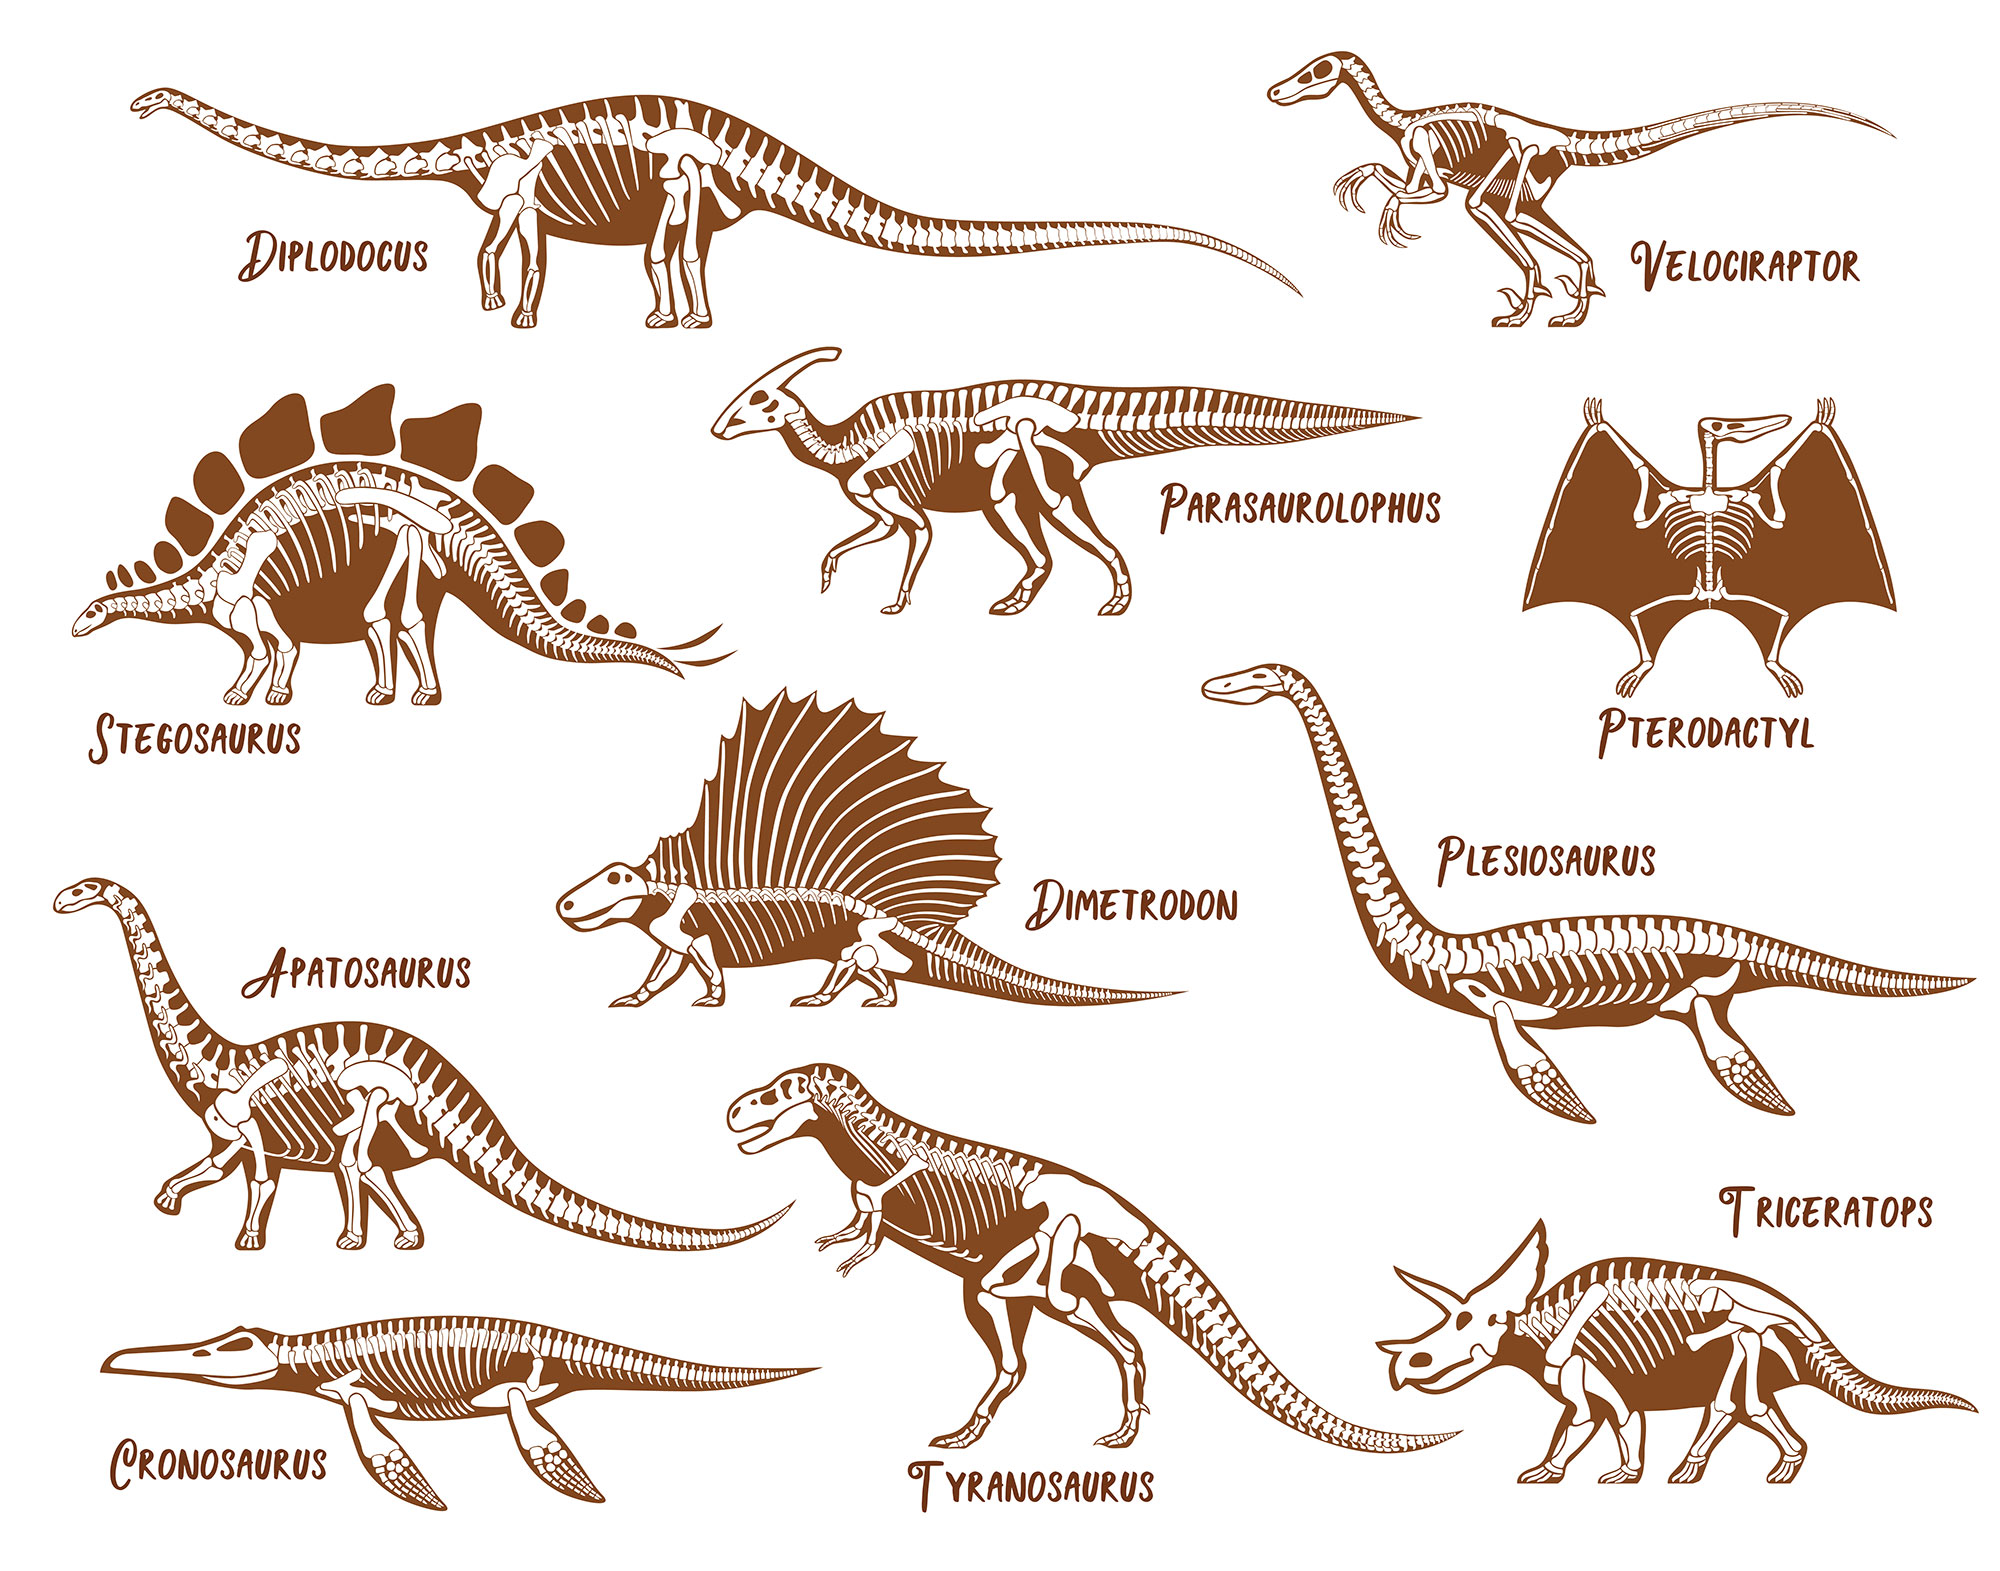 Tous les dinosaures les plus connus